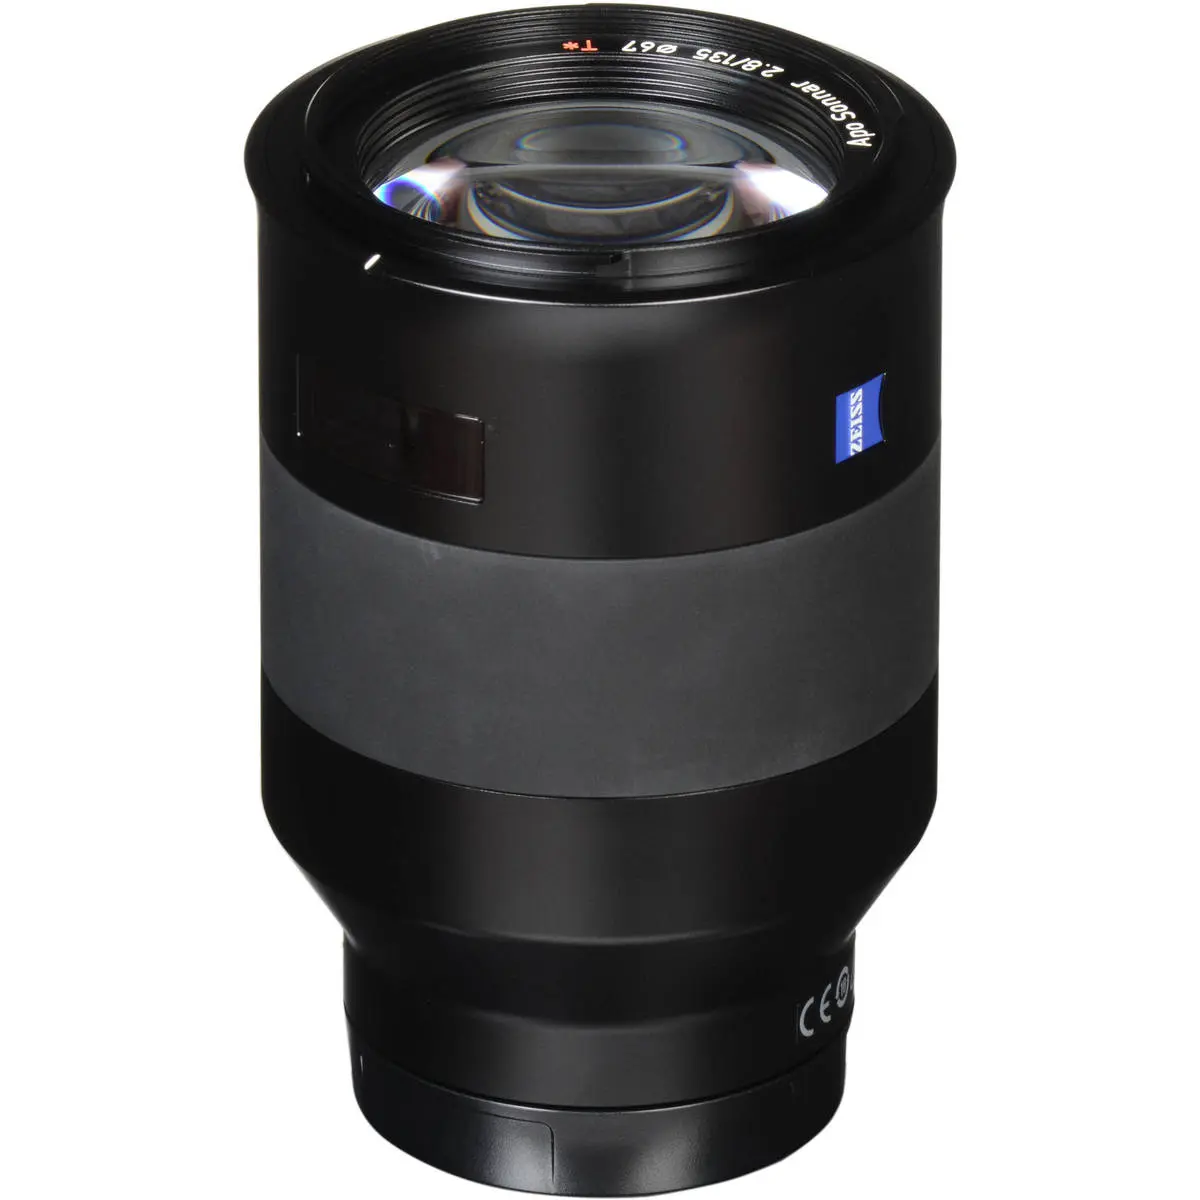 15. Carl Zeiss Batis 135mm F2.8 for Sony E mount Lens